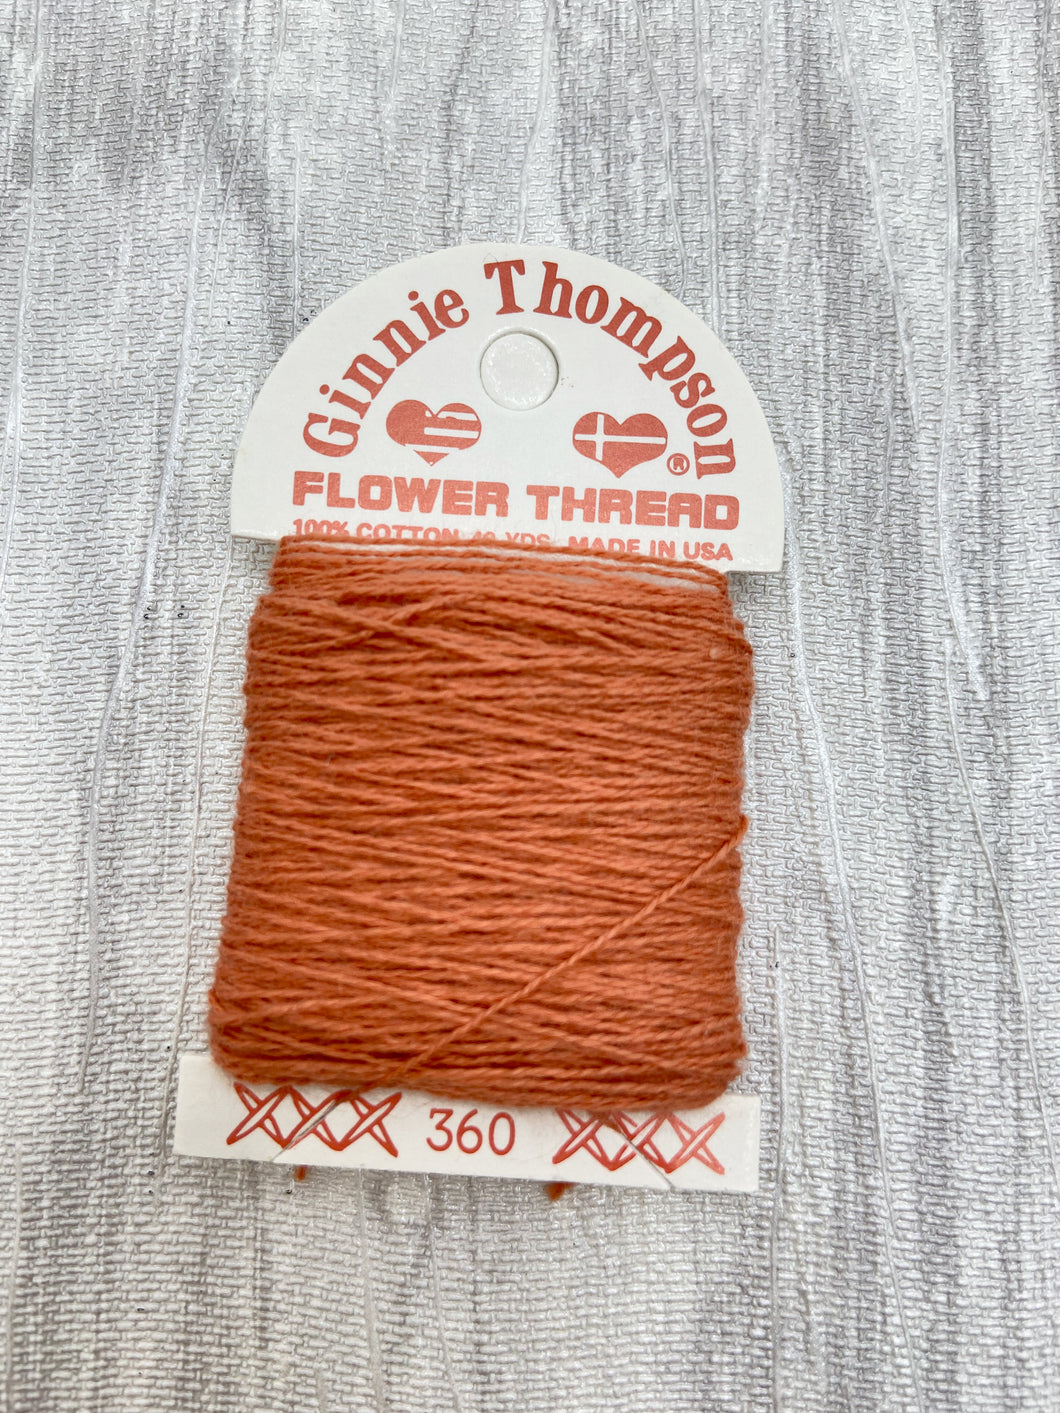 Light Terra Cotta (360) Ginnie Thompson Flower Thread